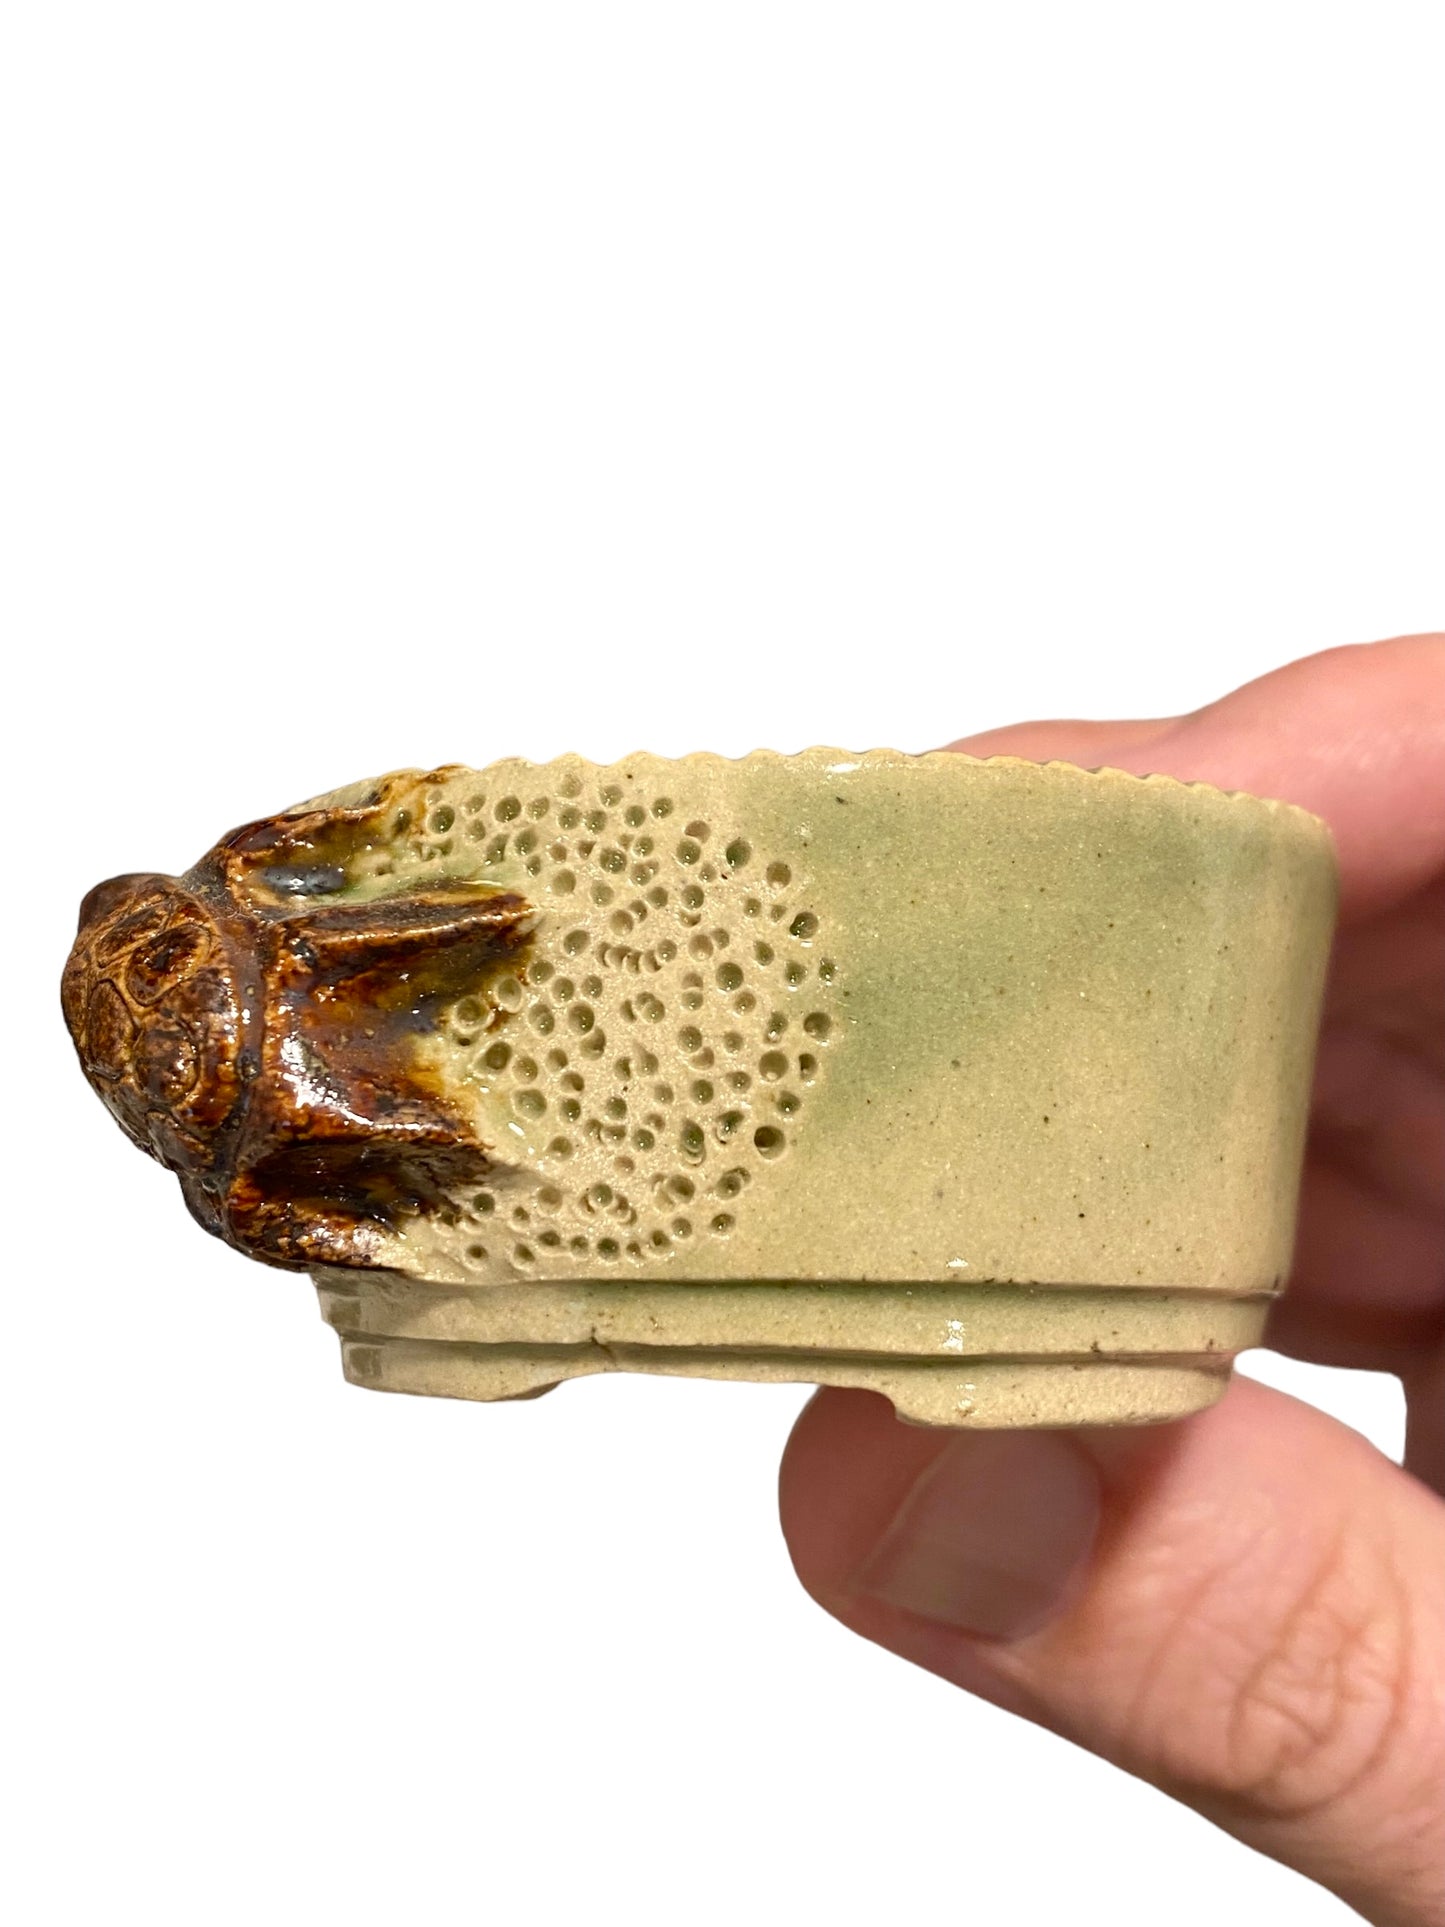 Takudo - Glazed Turtle Mame Bonsai or Accent Pot